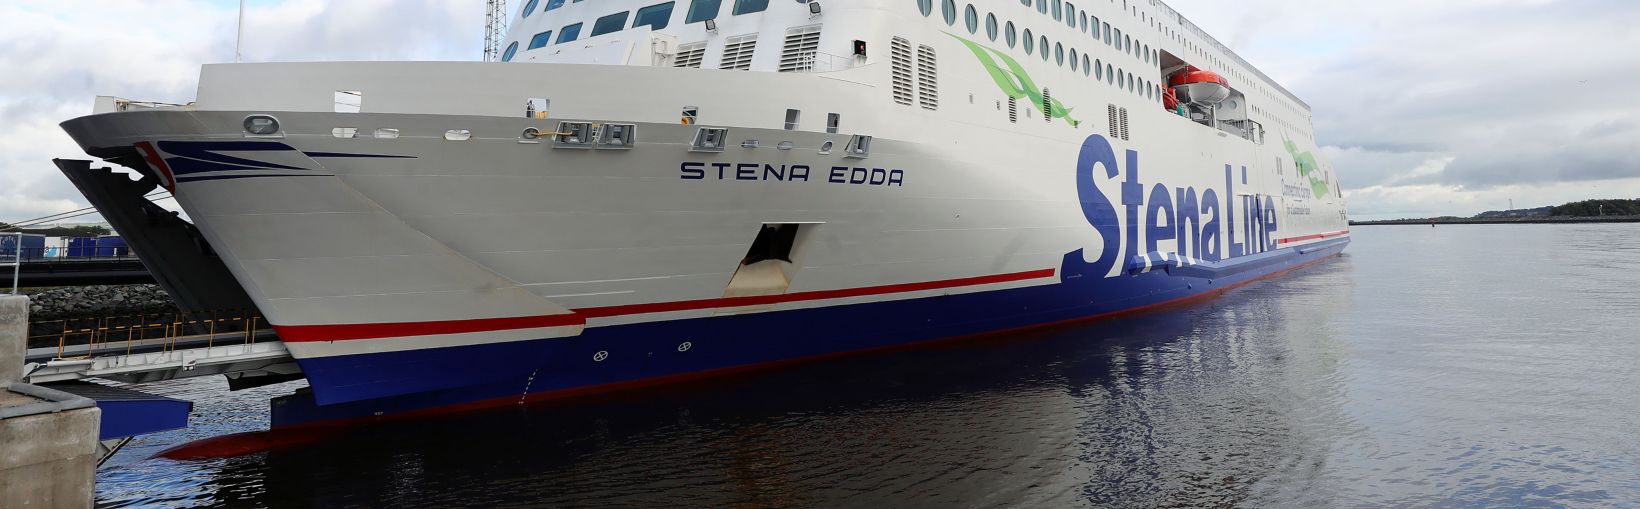 Nave Stena Edda attraccata al porto di Belfast